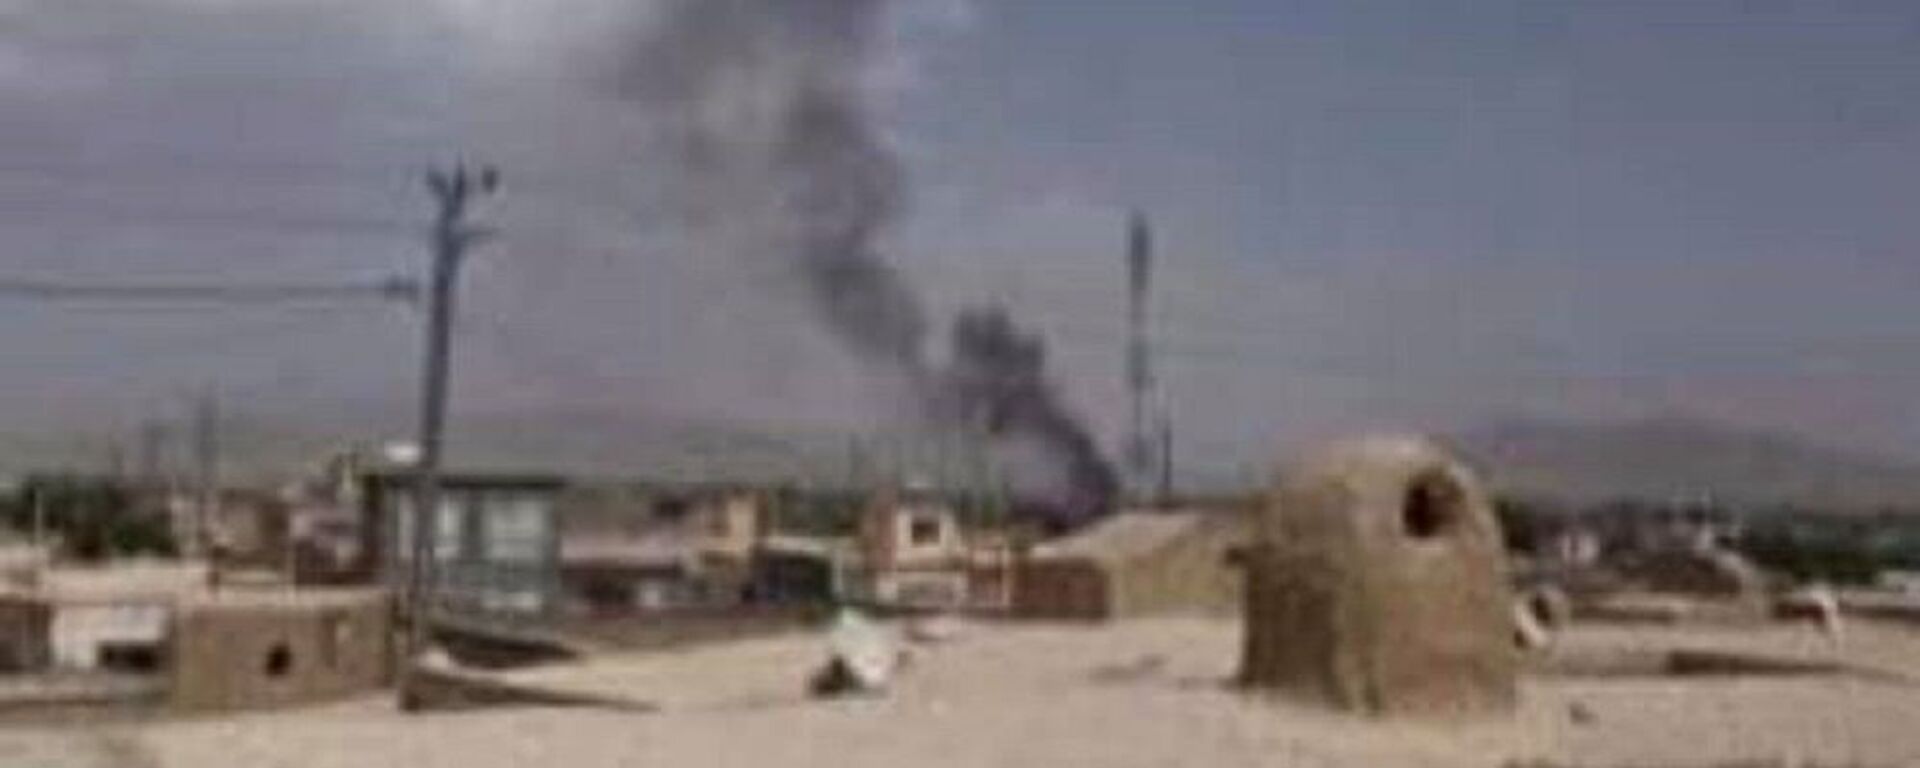  طالبان انستیتیوت تخنیکی شهر پلخمری را آتش زدند - اسپوتنیک افغانستان  , 1920, 06.07.2021